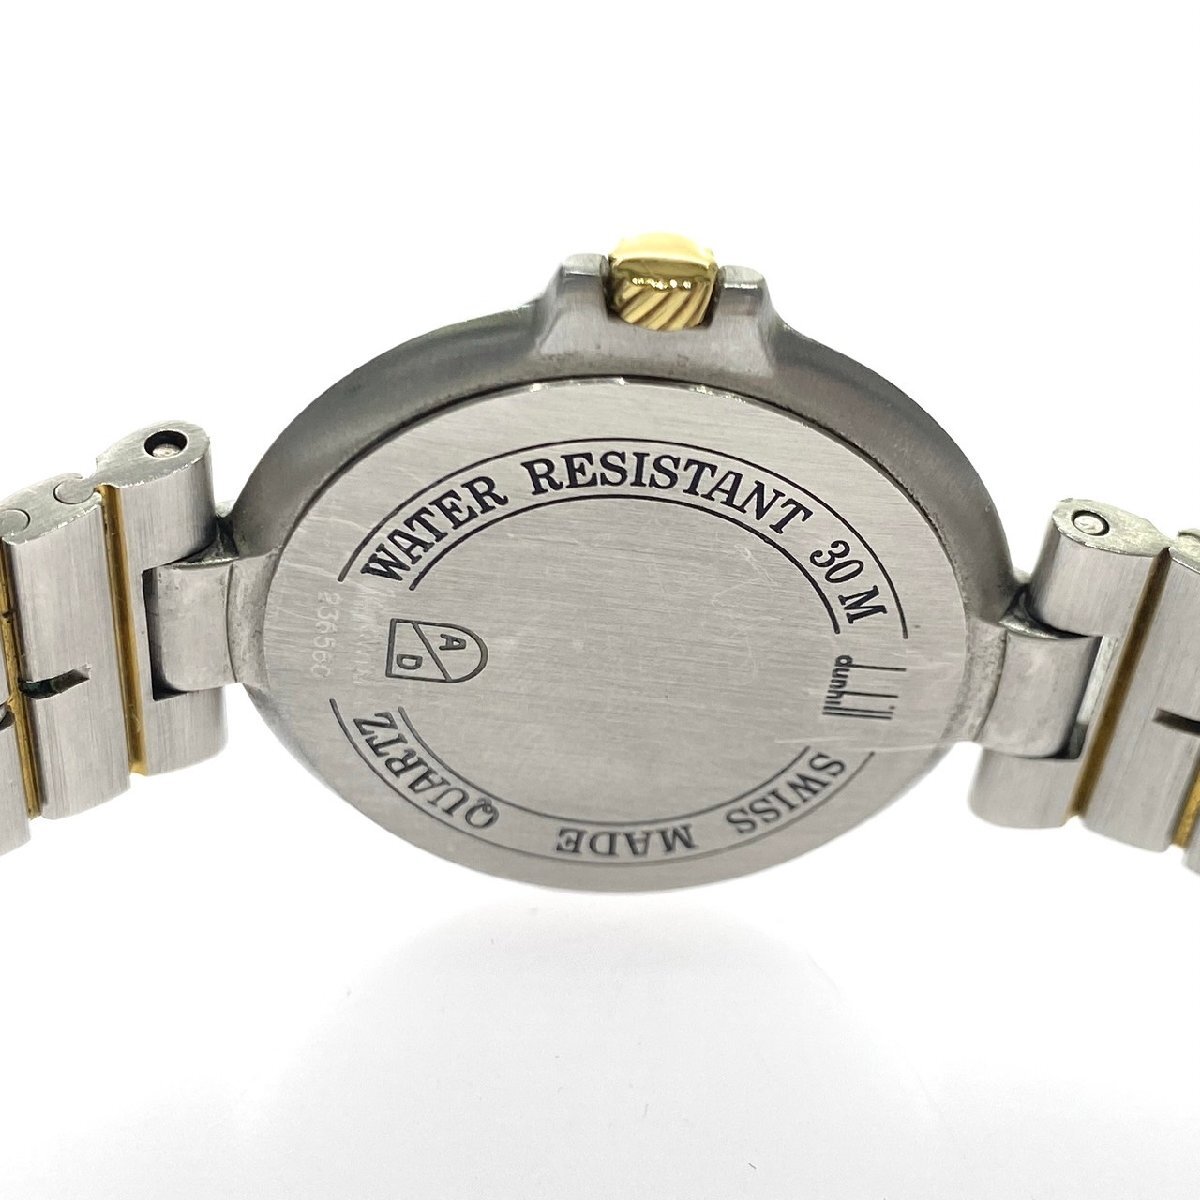 1 иен старт работа товар Dunhill Dunhill мужские наручные часы millenium Date кварц QZ комбинированный цвет раунд лицо 3 стрелки Gold циферблат 